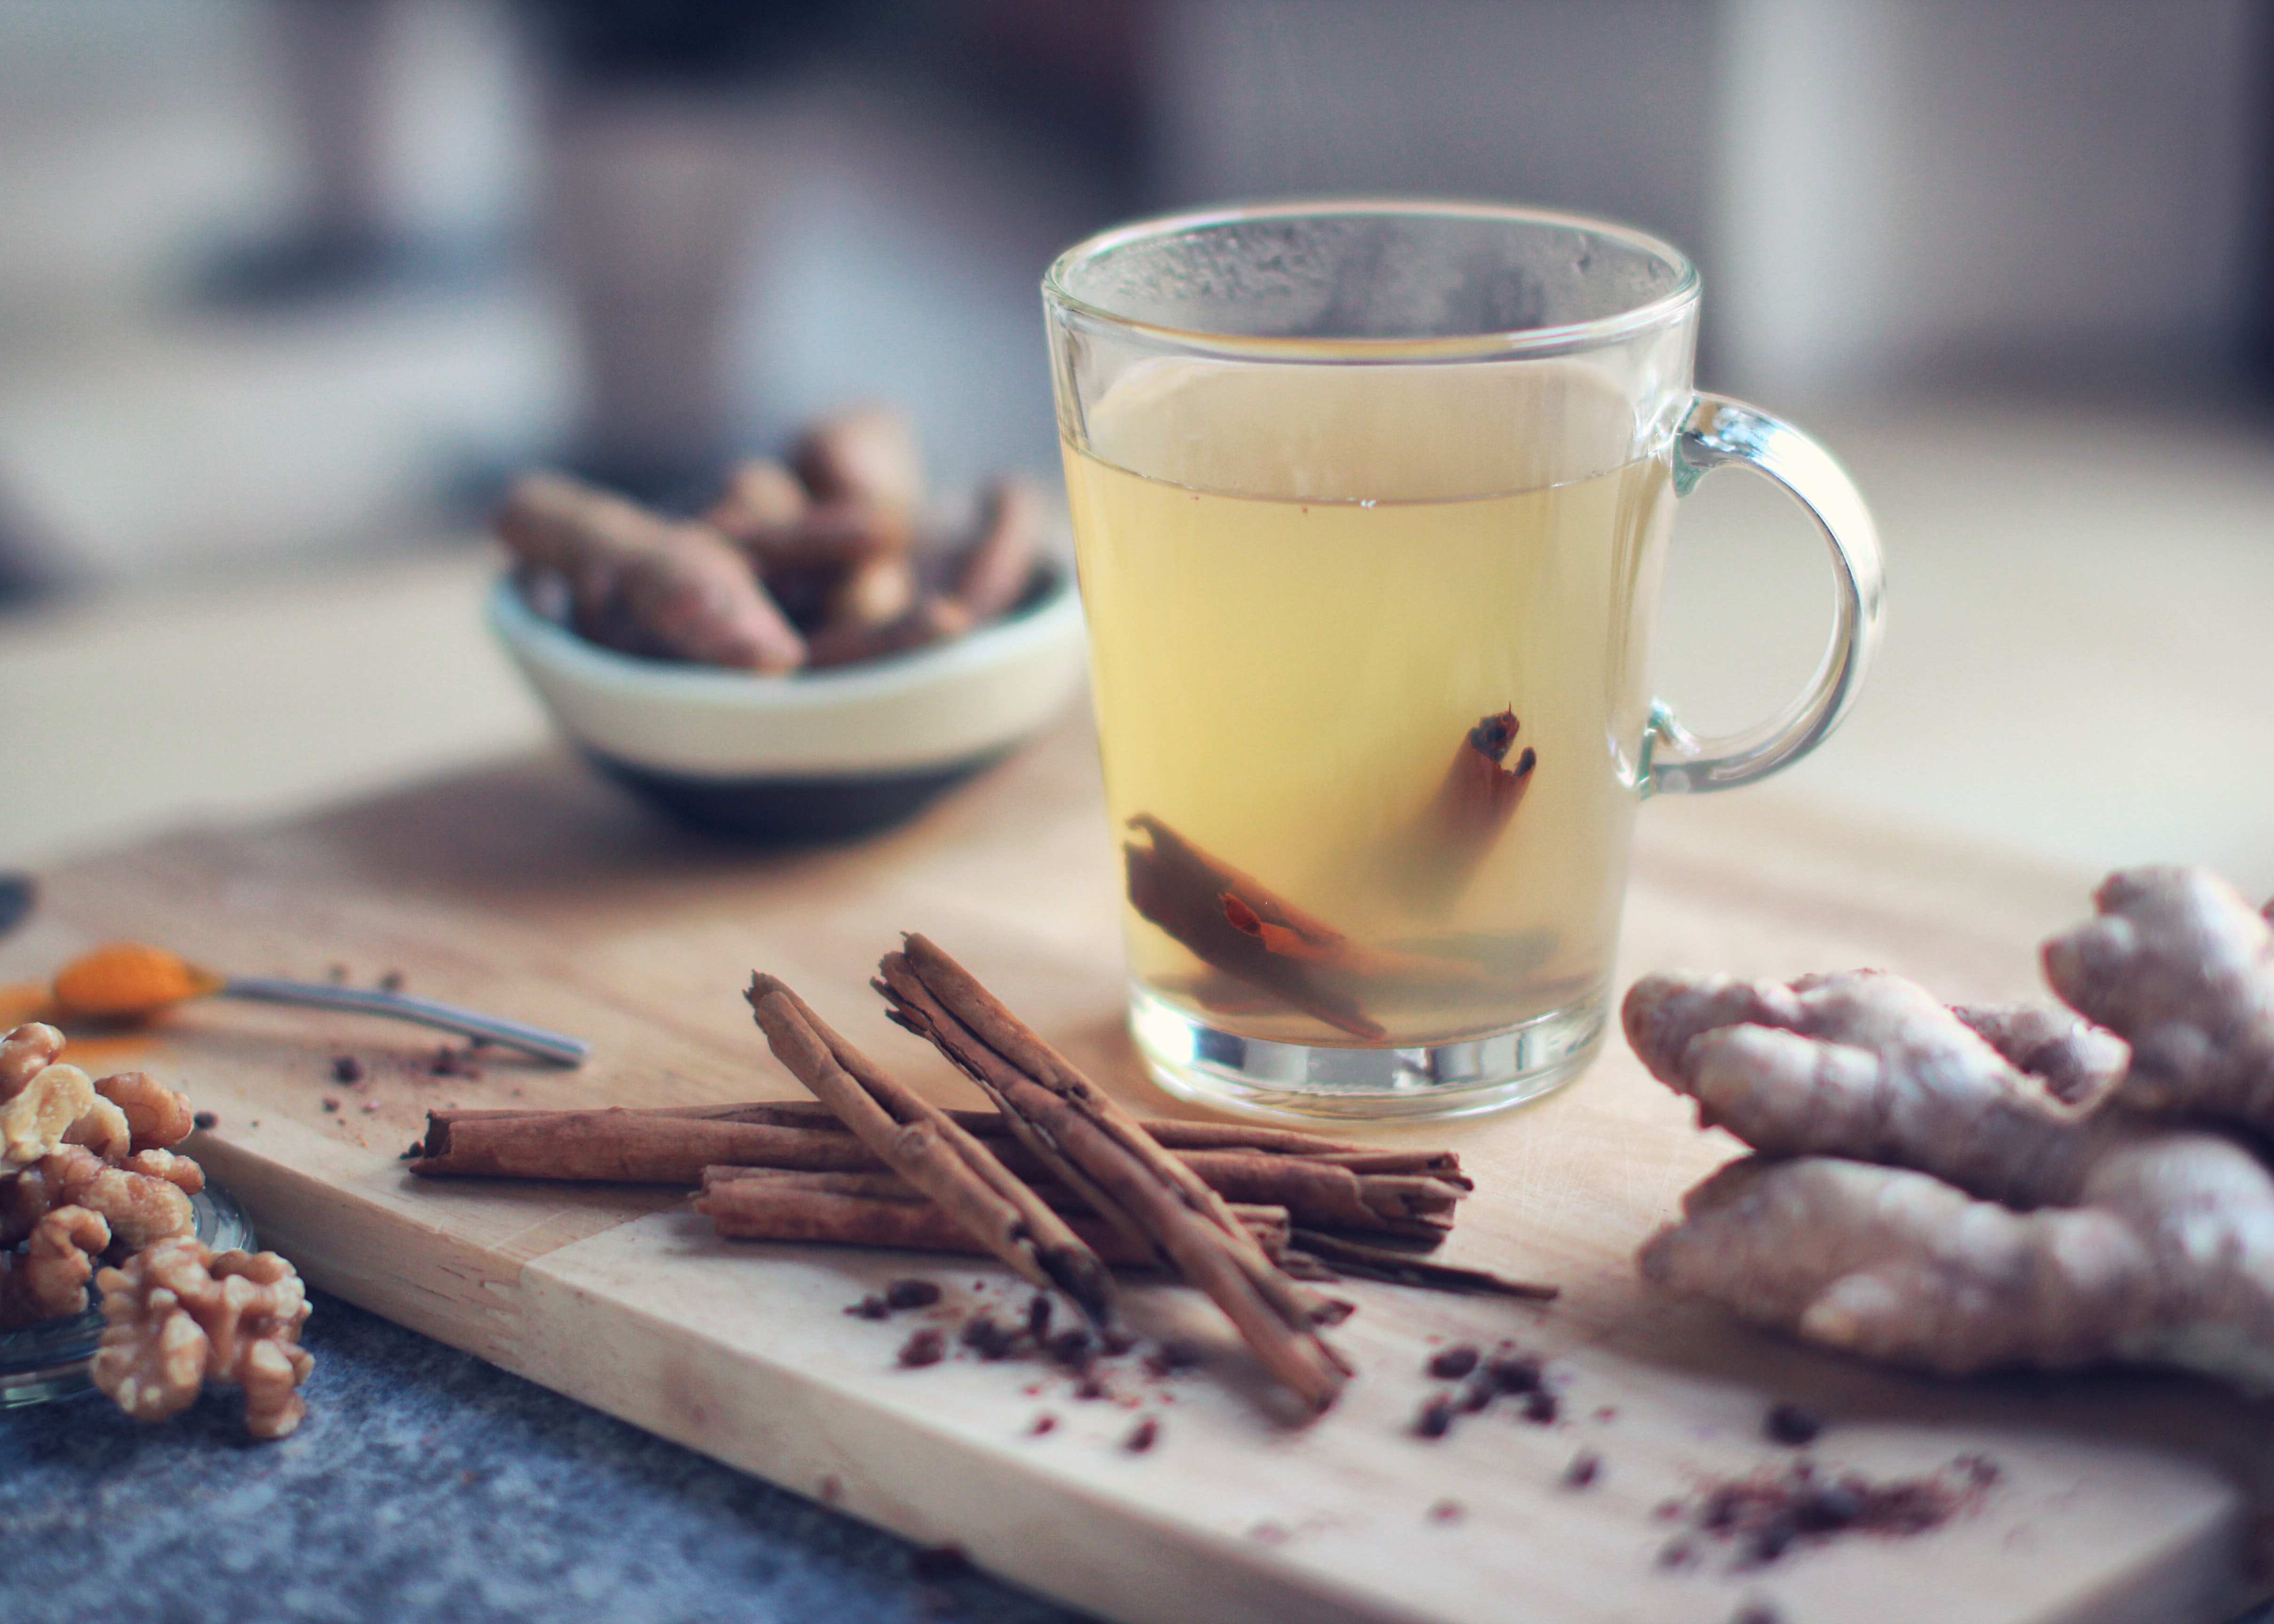 Zázvorový čaj ve sklenici s uchem na dřevěném kuchyňském prkénku. Kolem jsou položené kousky zázvoru a ořechy.